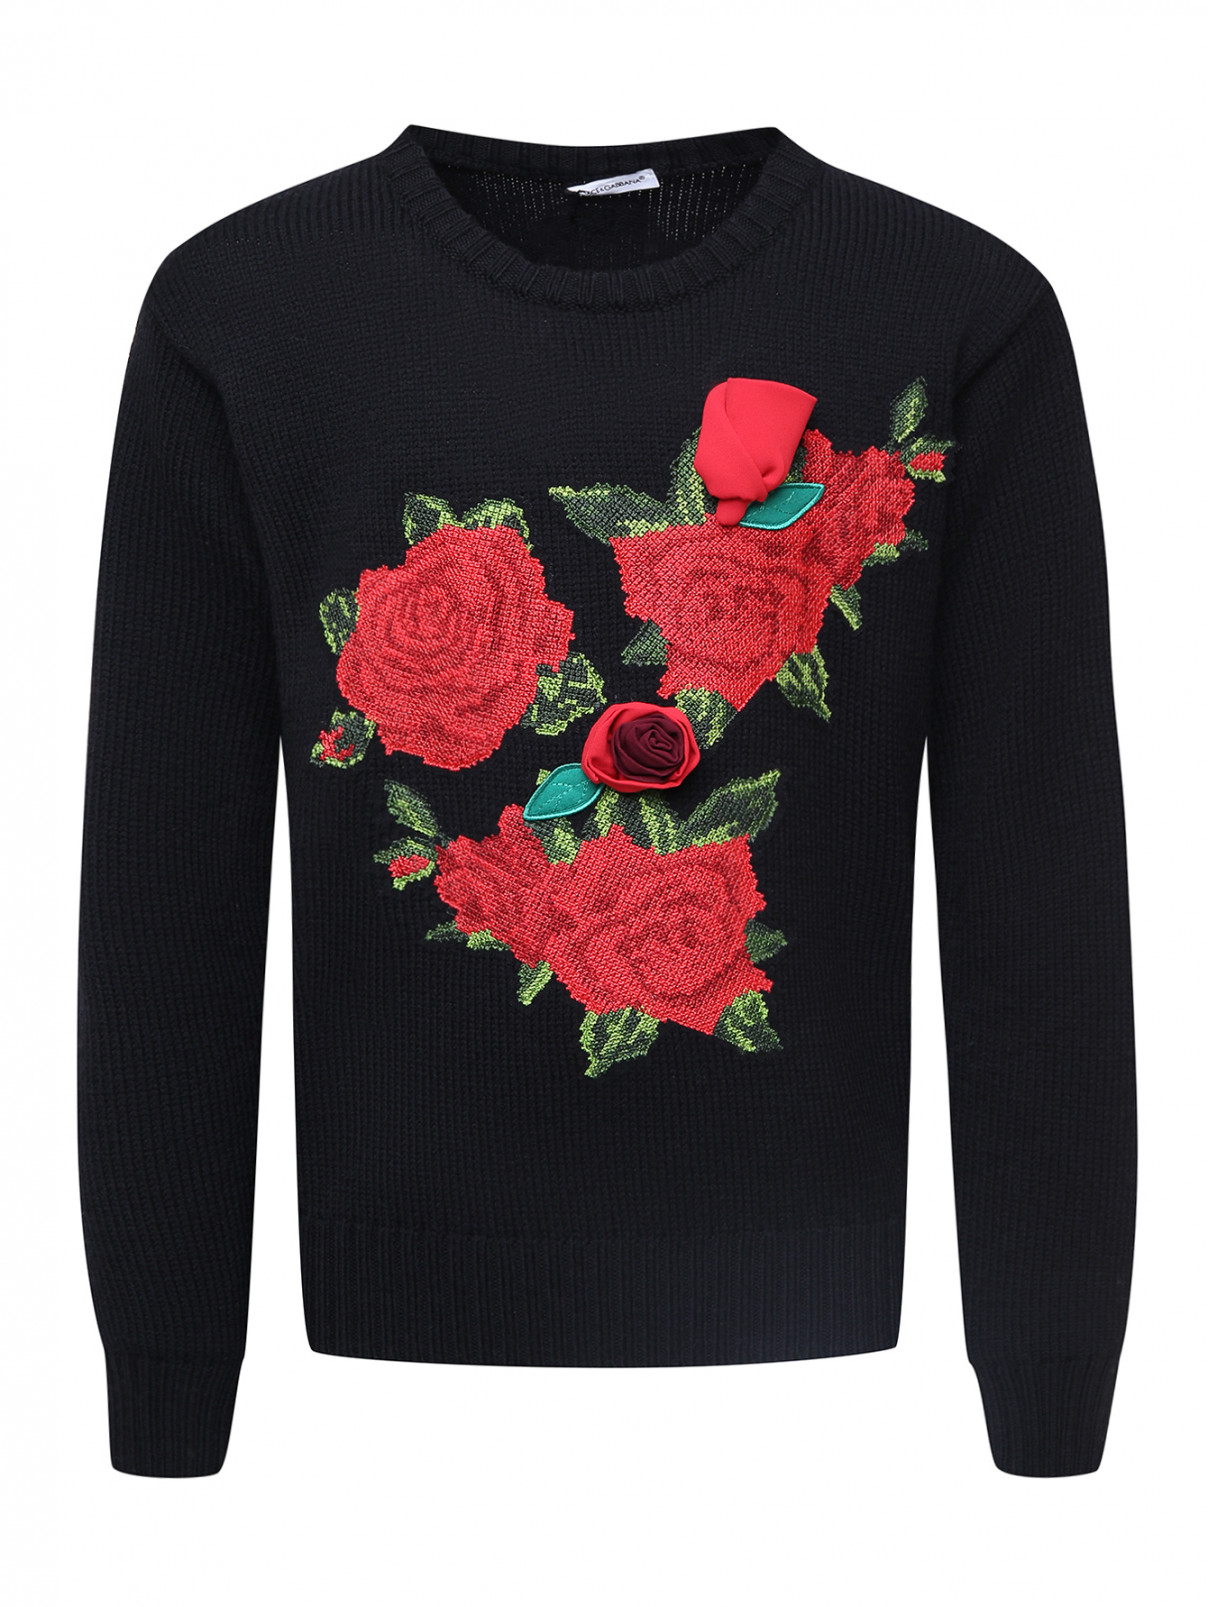 Шерстяной джемпер с аппликацией Dolce & Gabbana  –  Общий вид  – Цвет:  Черный